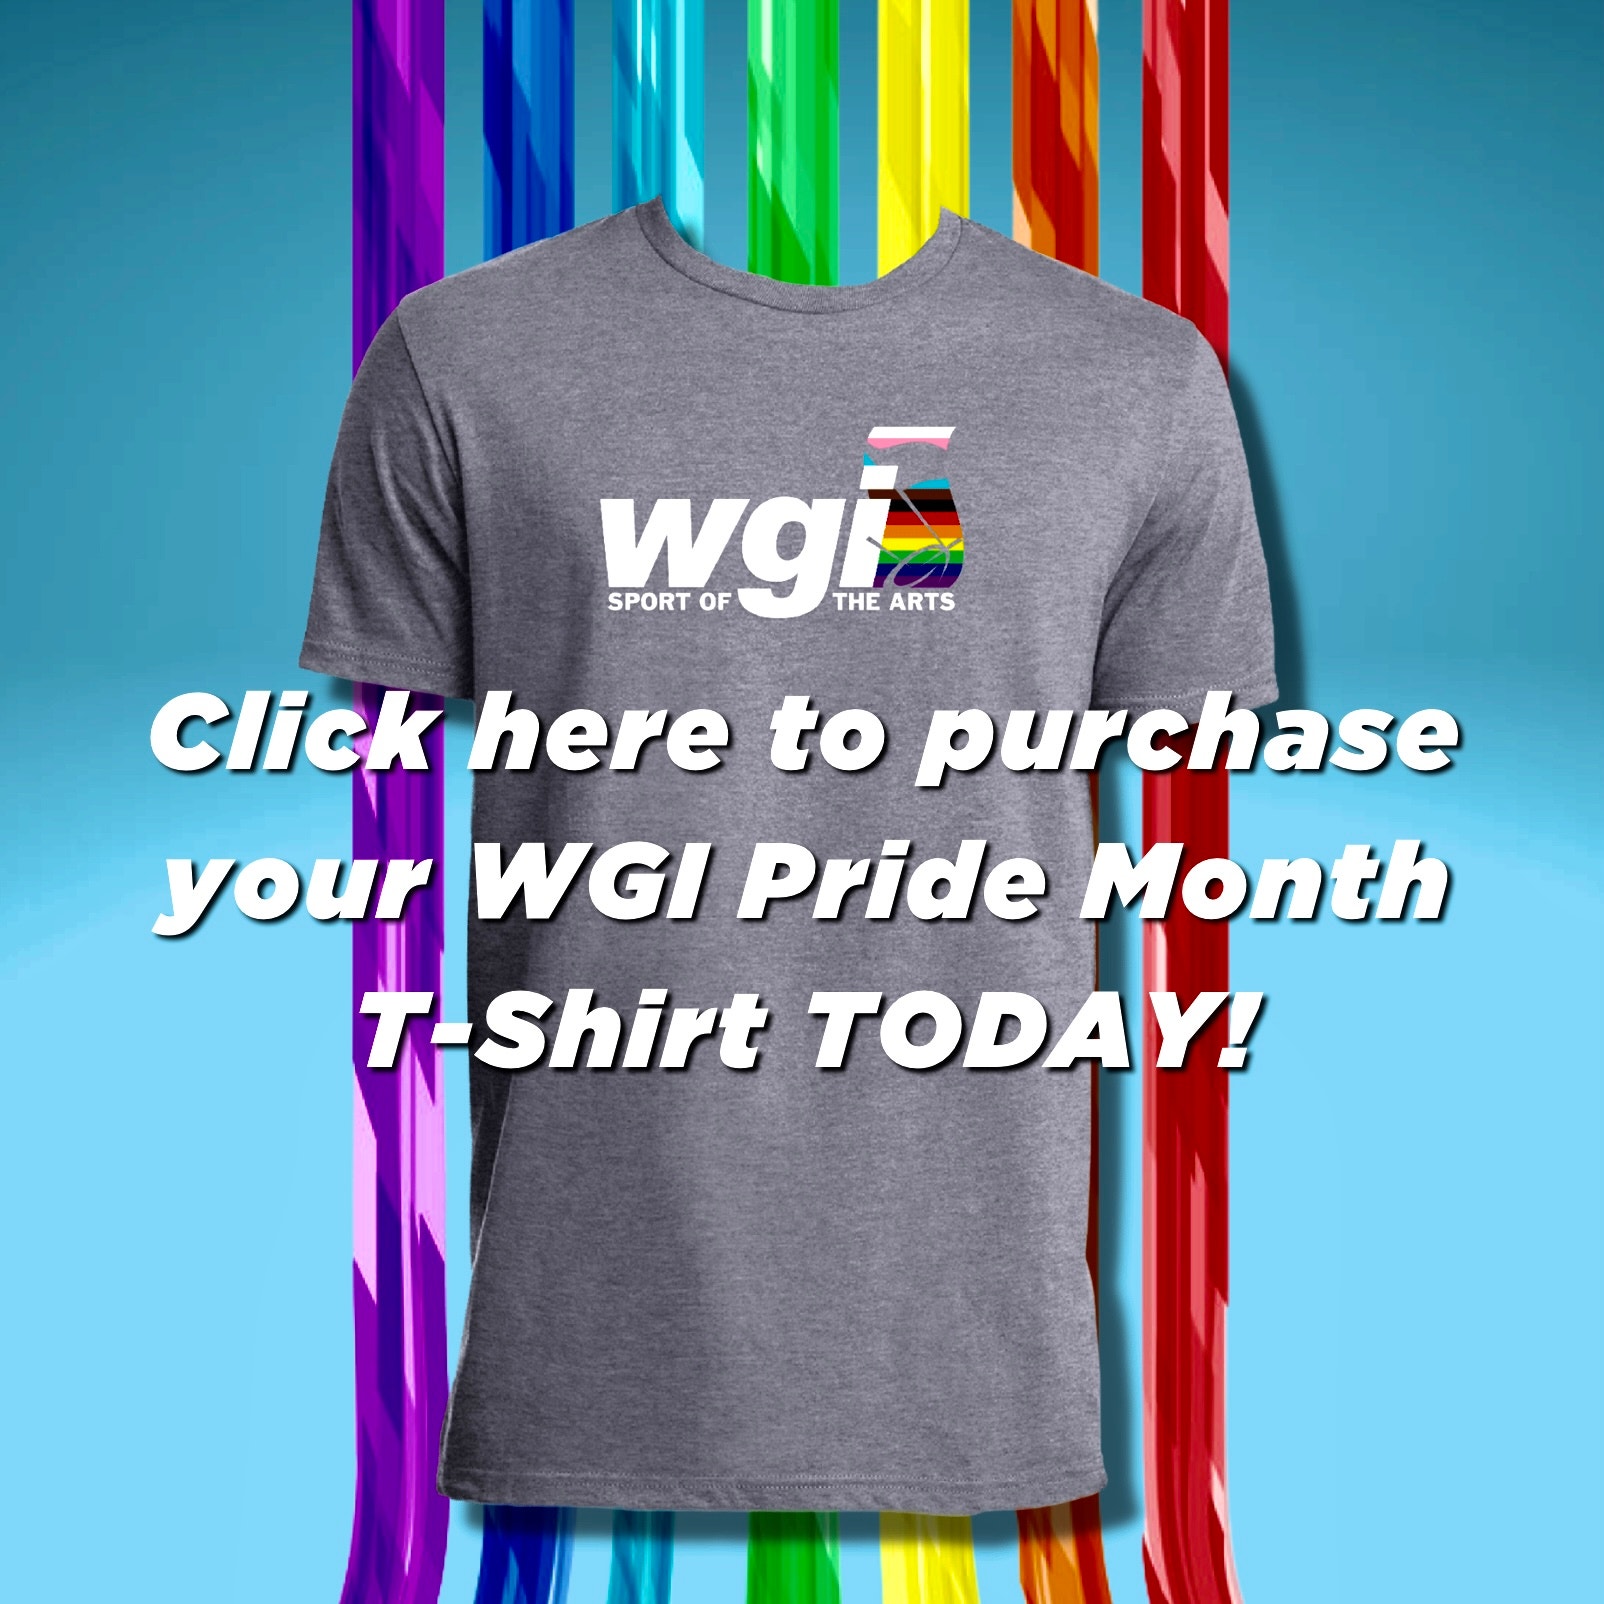 WGI Collaborates With Pepwear for Pride Month Initiative - WGI